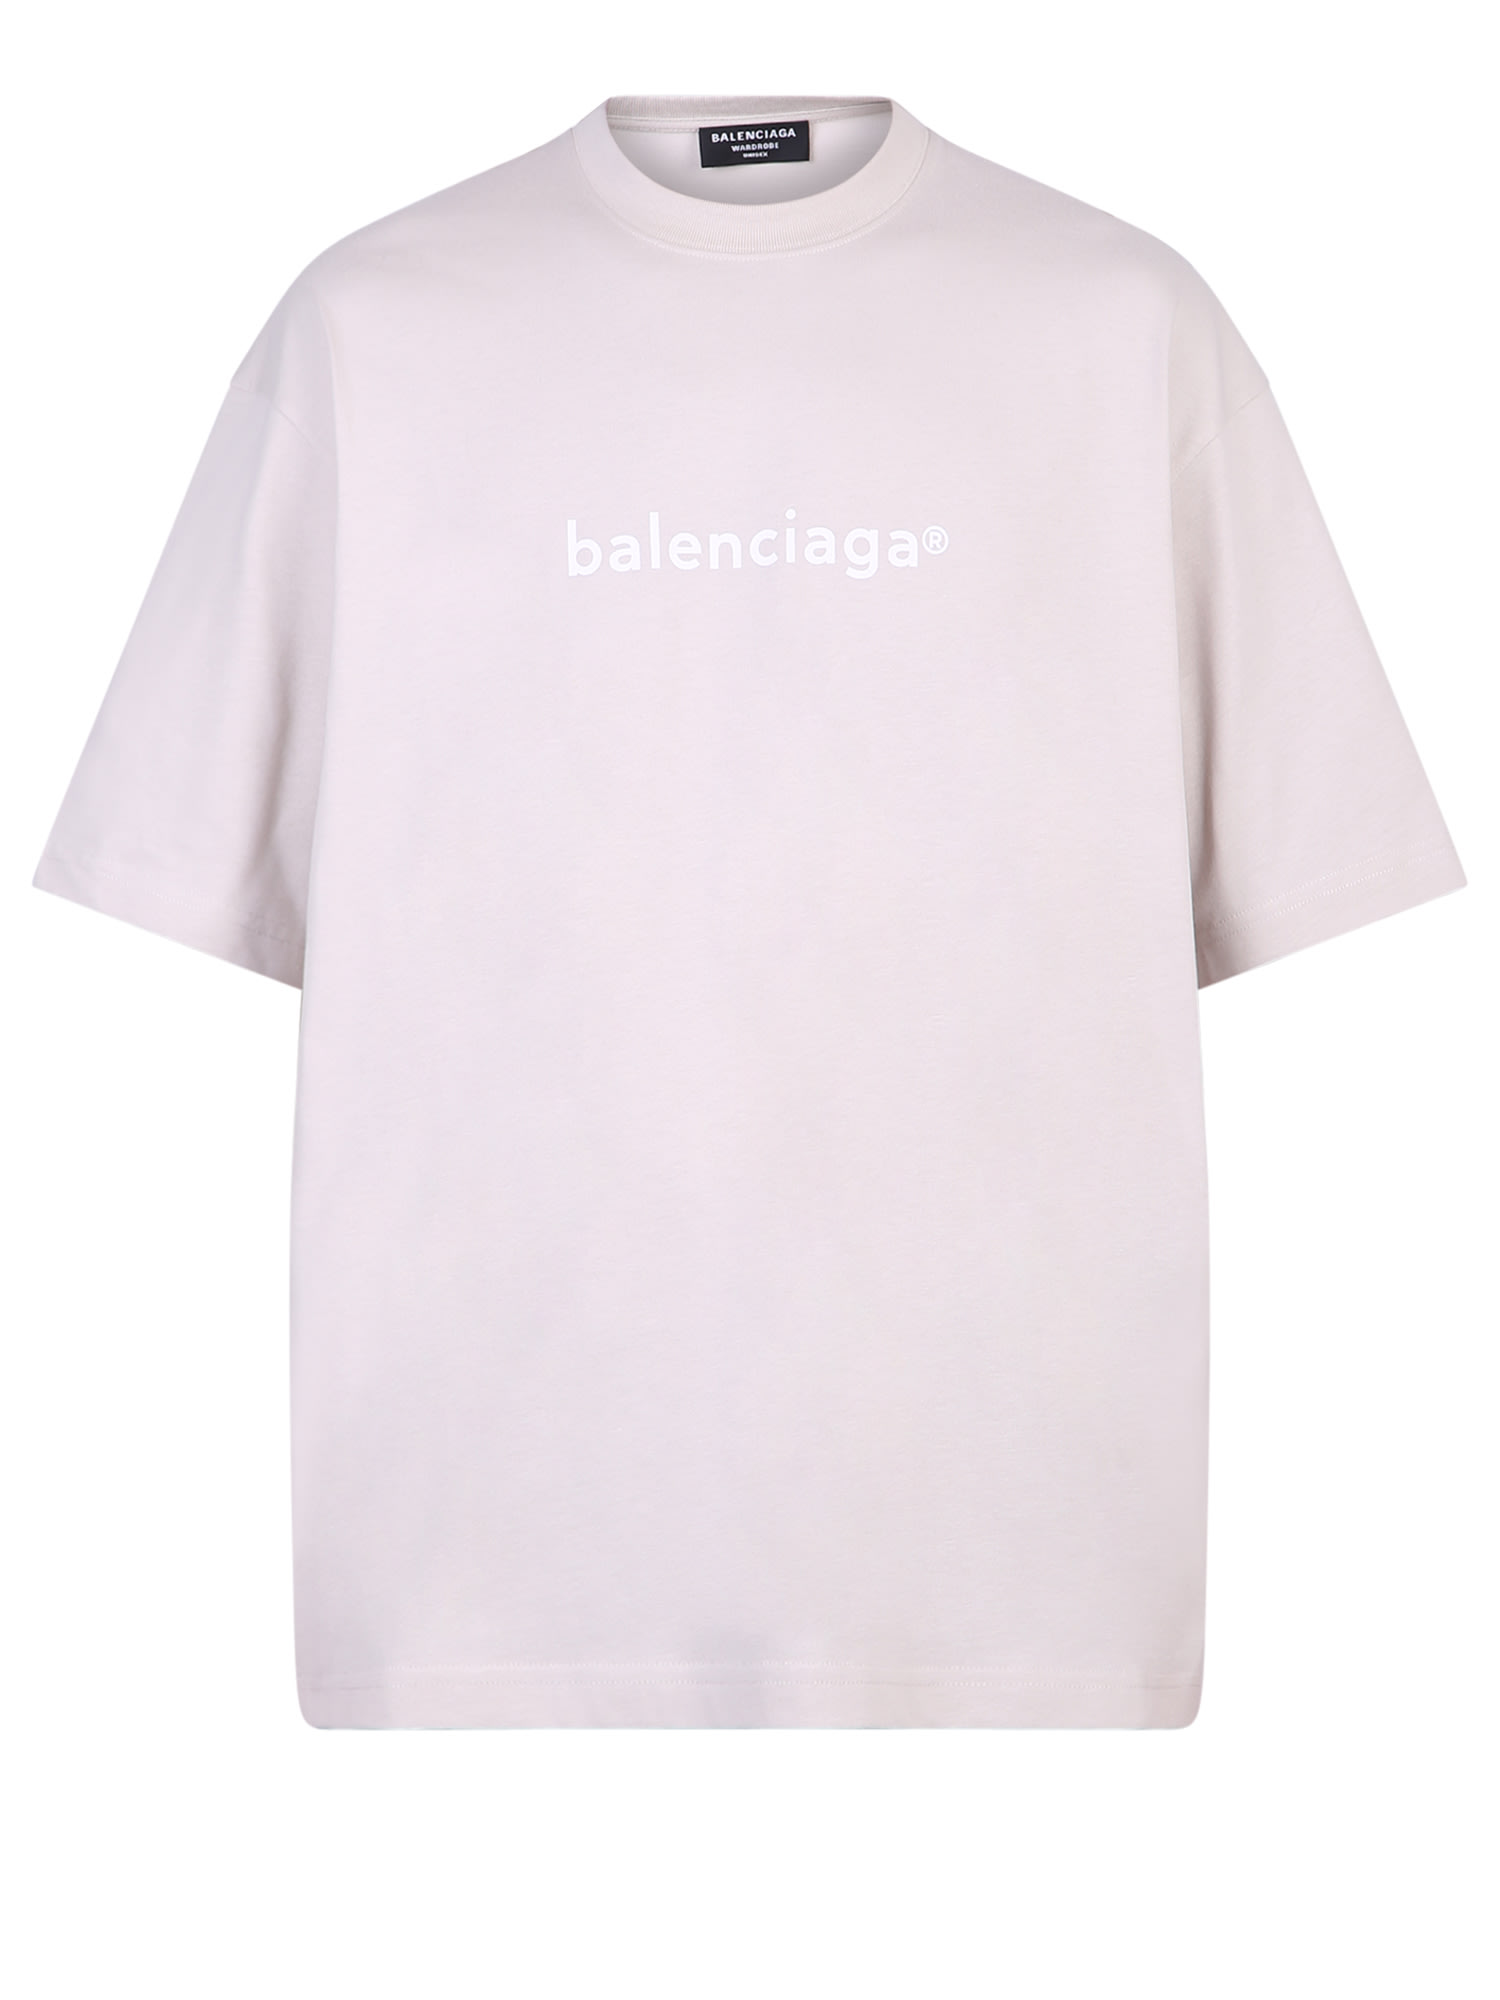 Balenciaga Printed T-shirt In Grey